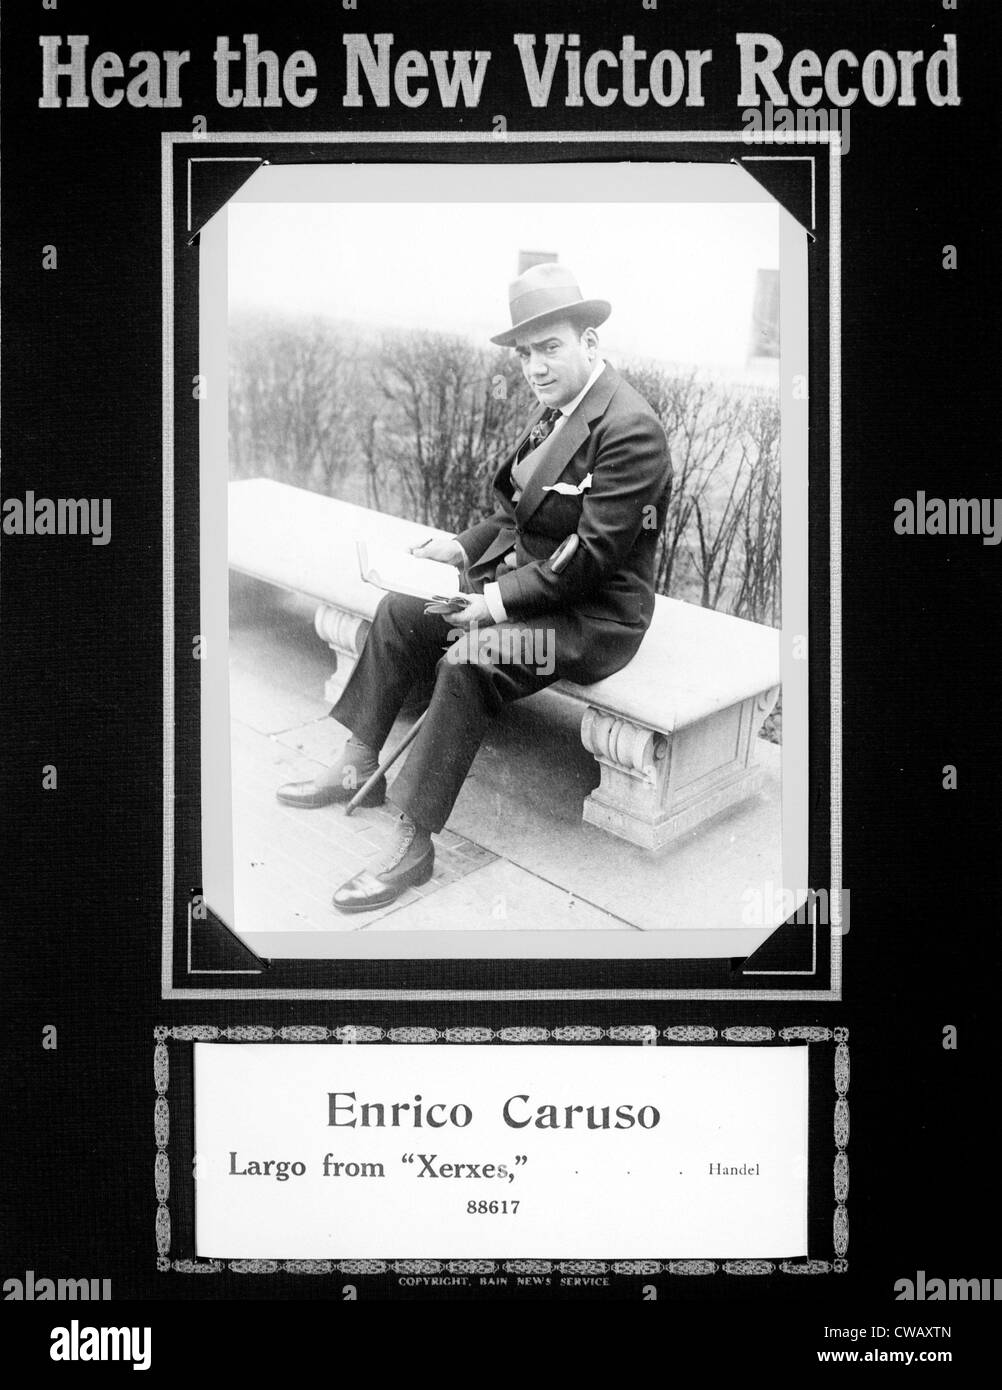 Enrico caruso Banque de photographies et d'images à haute résolution - Page  3 - Alamy